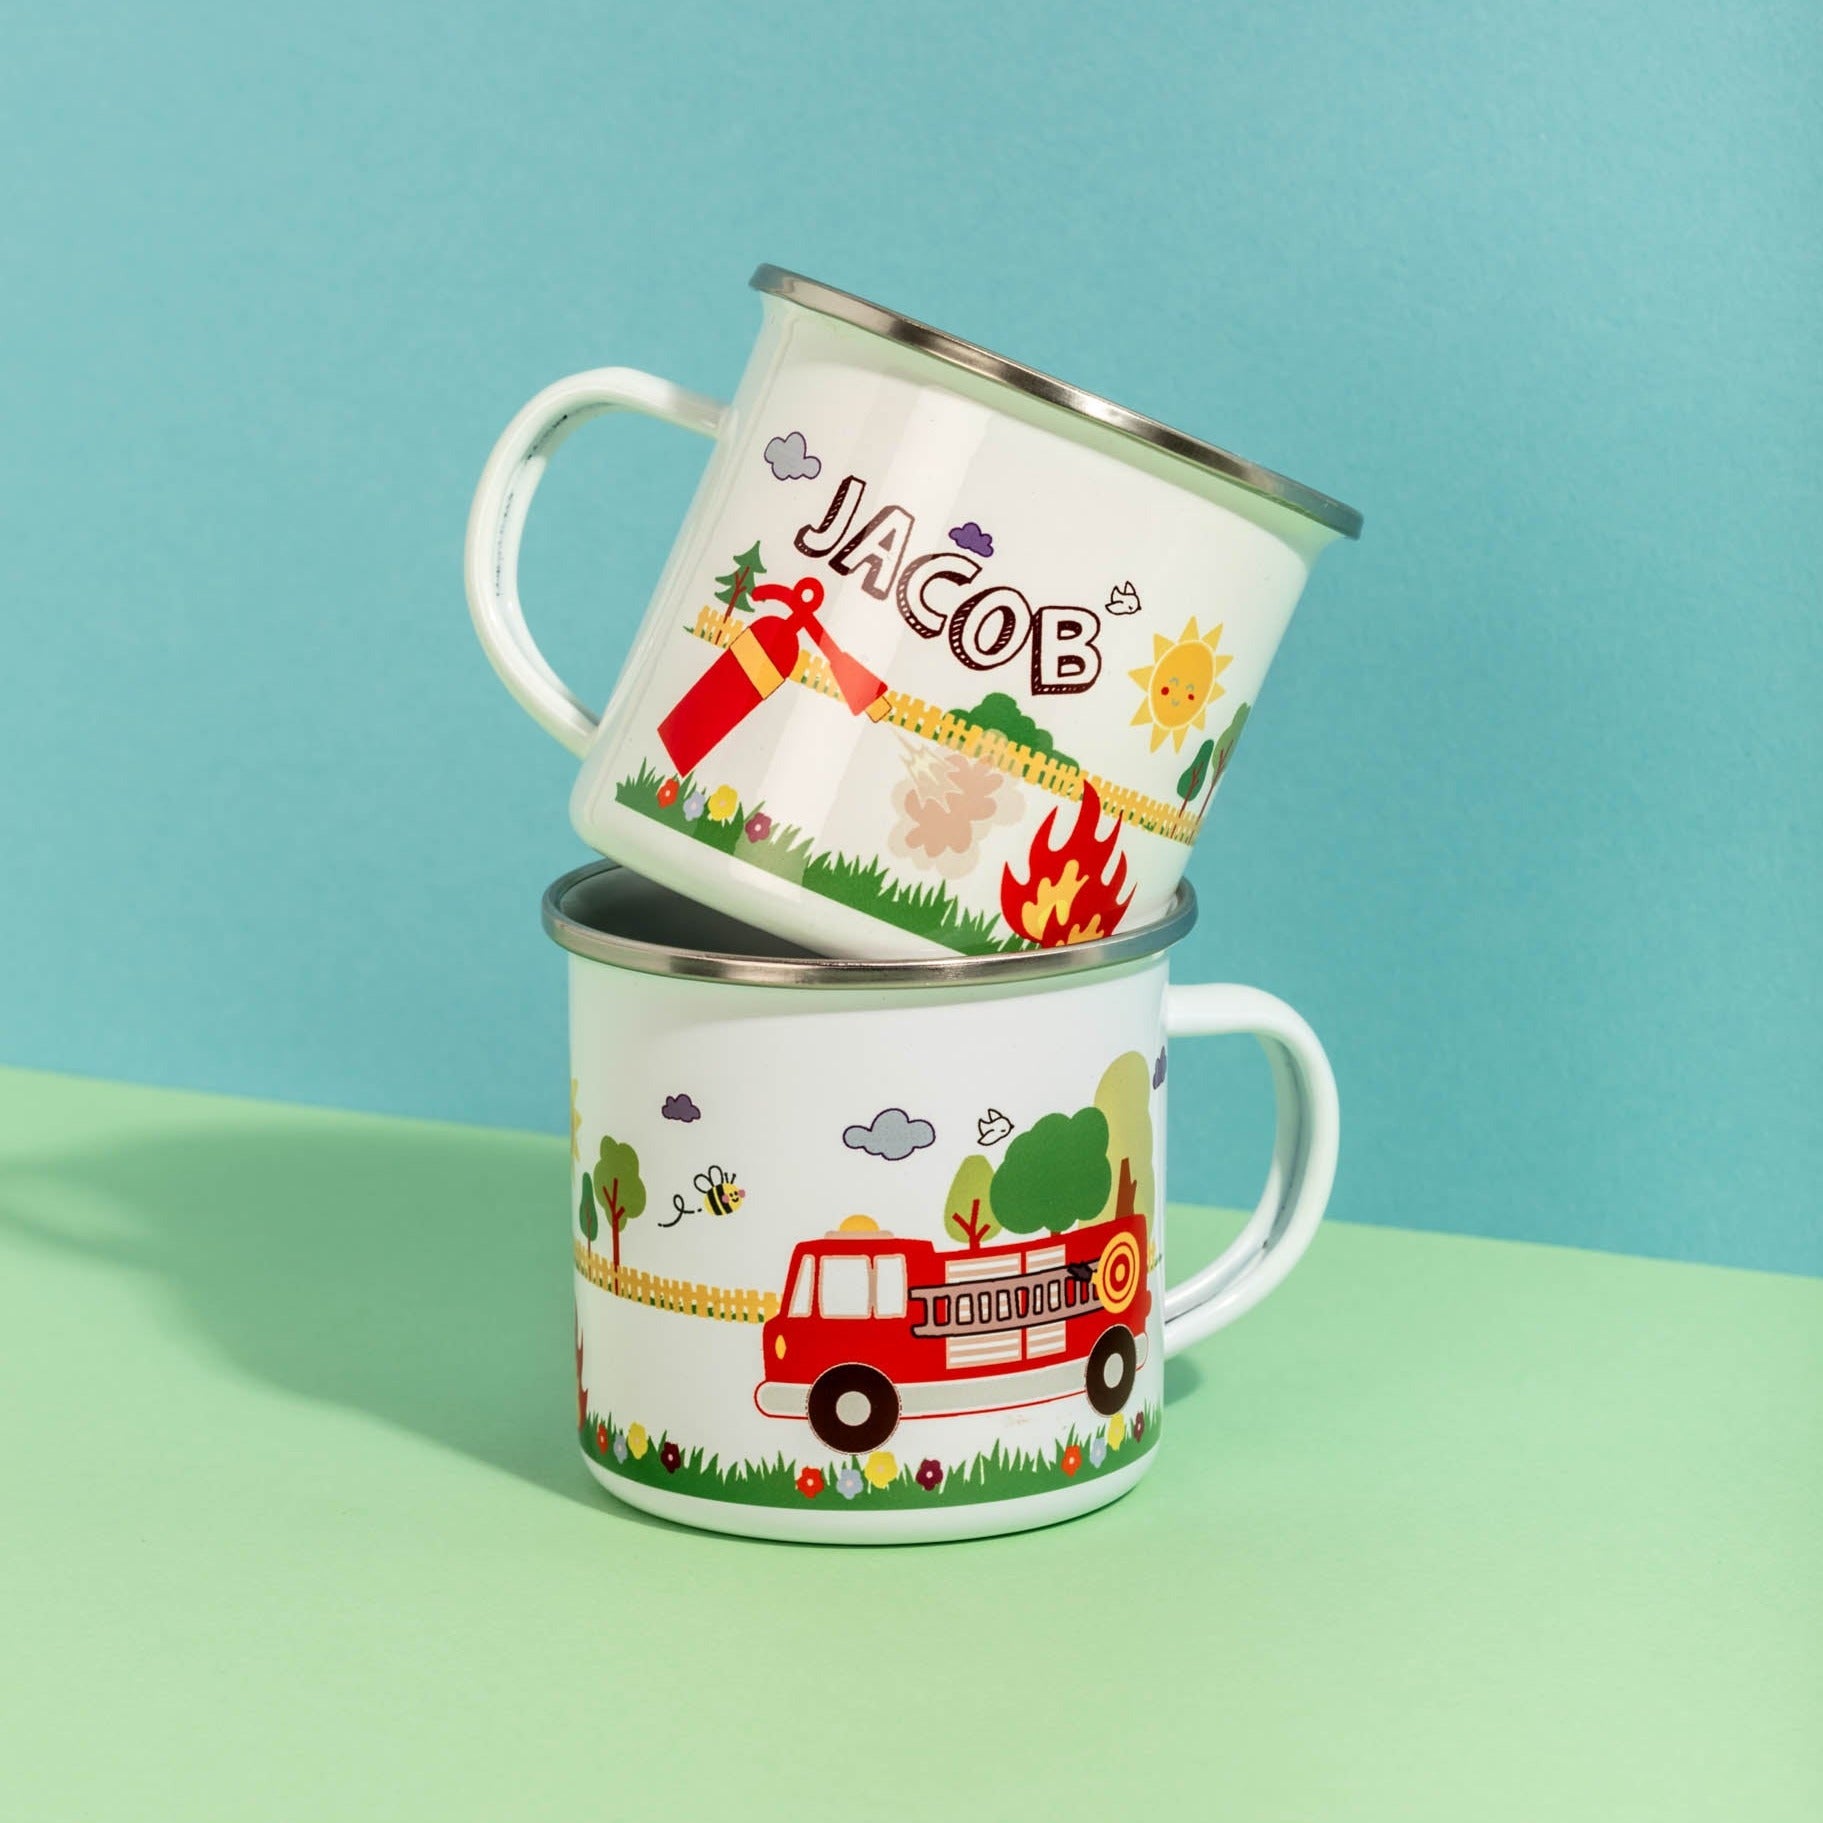 Personalised Children's Fire Truck Themed Enamel Mug